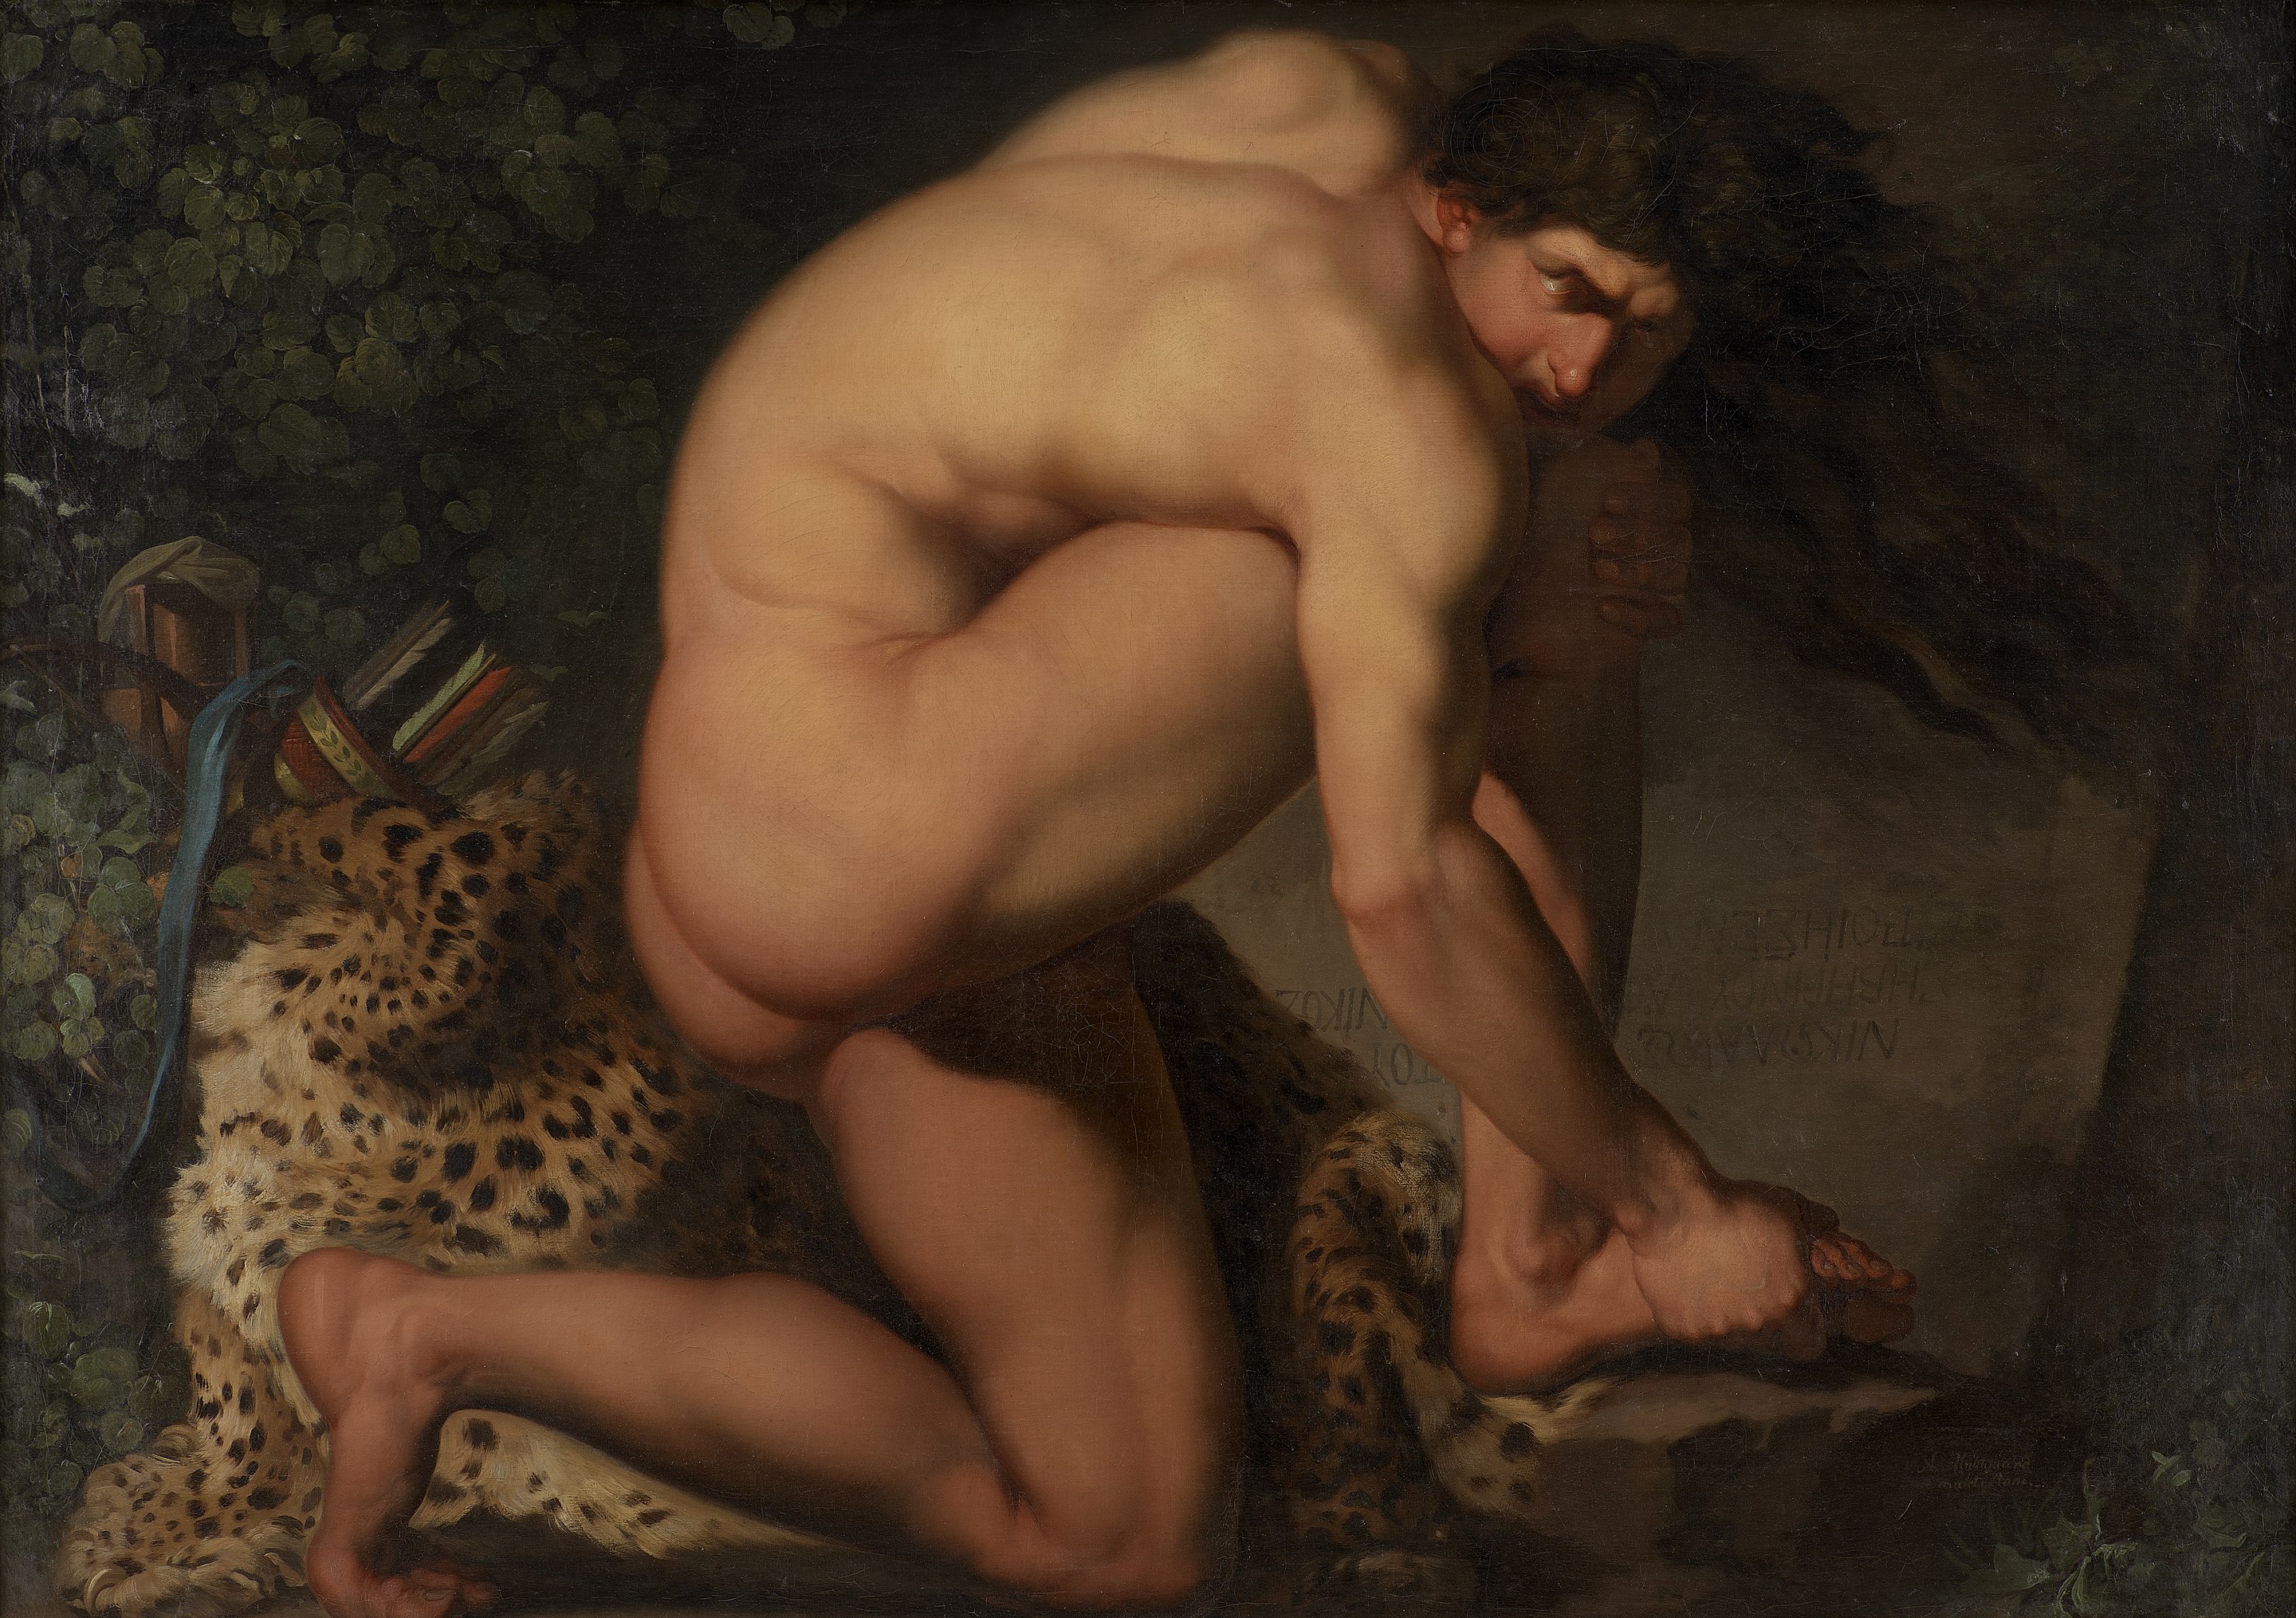 Très beau tableau de 1775 intitulé « L'orteil dans la putain de sa mère de table basse »